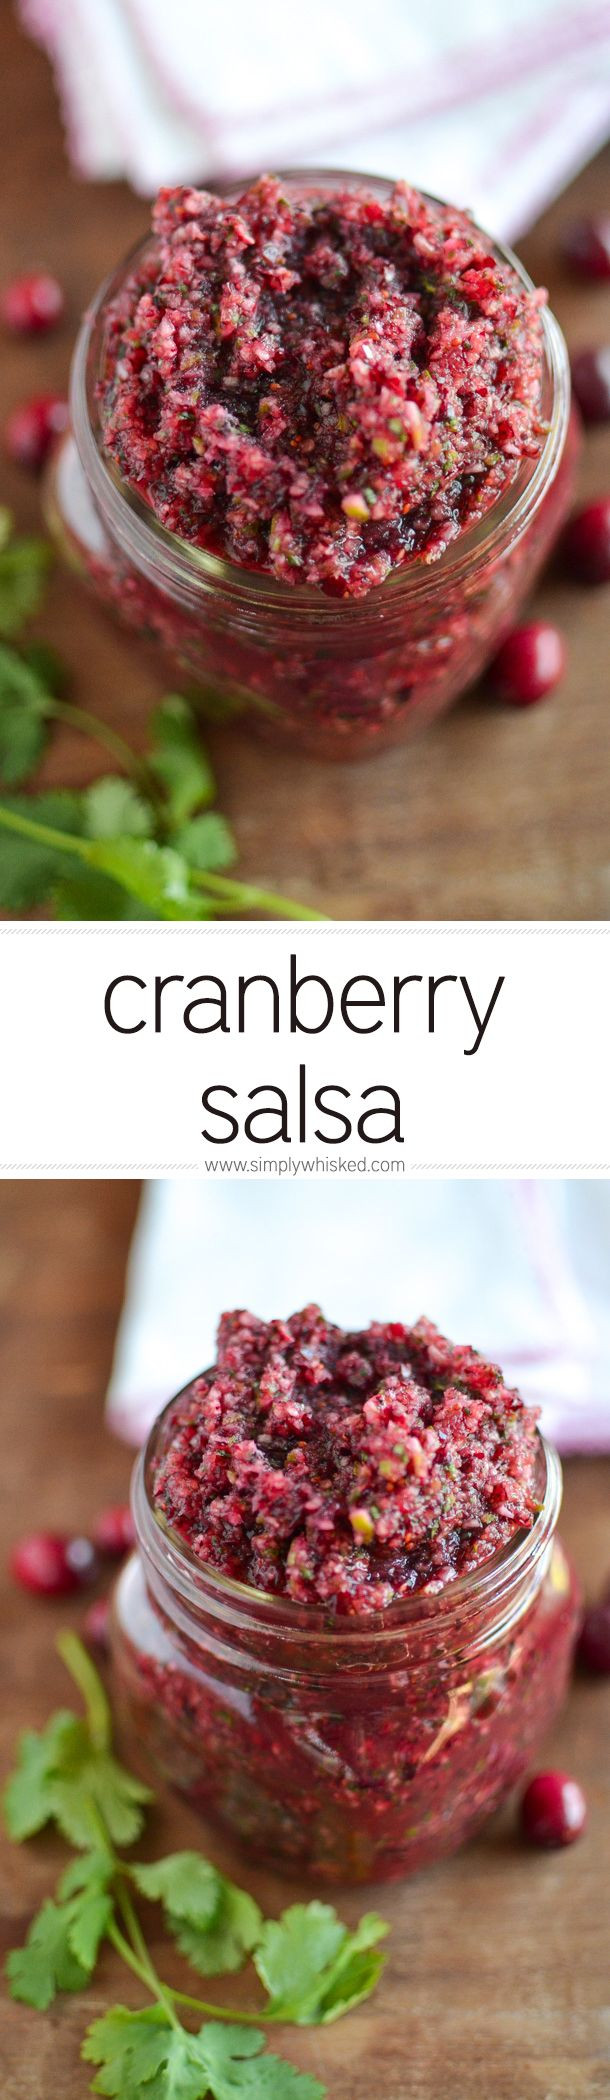 Cranberry Salsa Recipes
 Cranberry Salsa Recipe